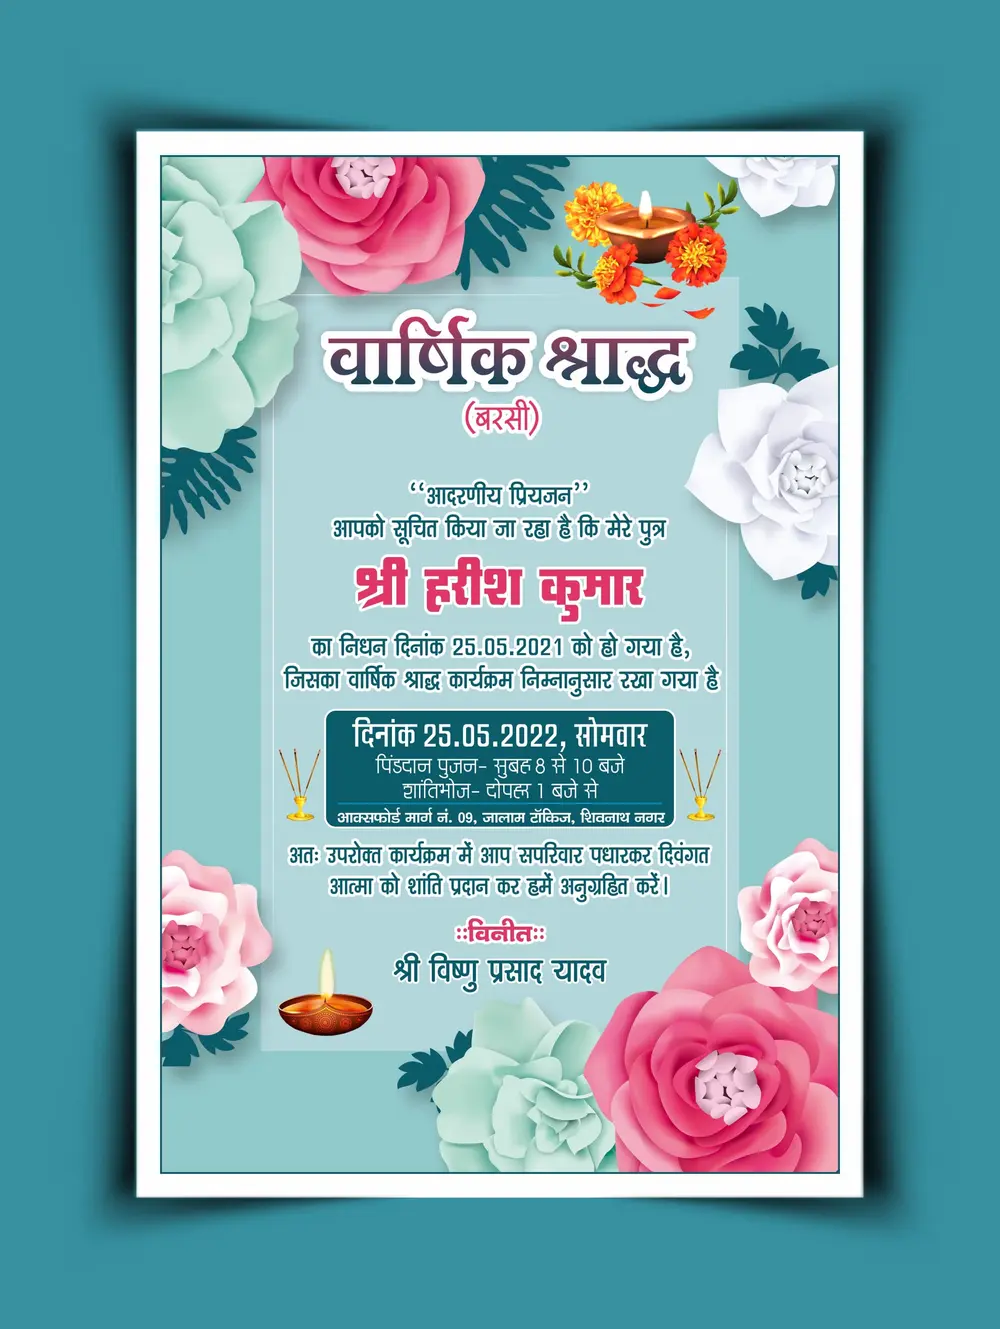 FHD_Barsi invitation card hindi cdr and psd file download_311022-min